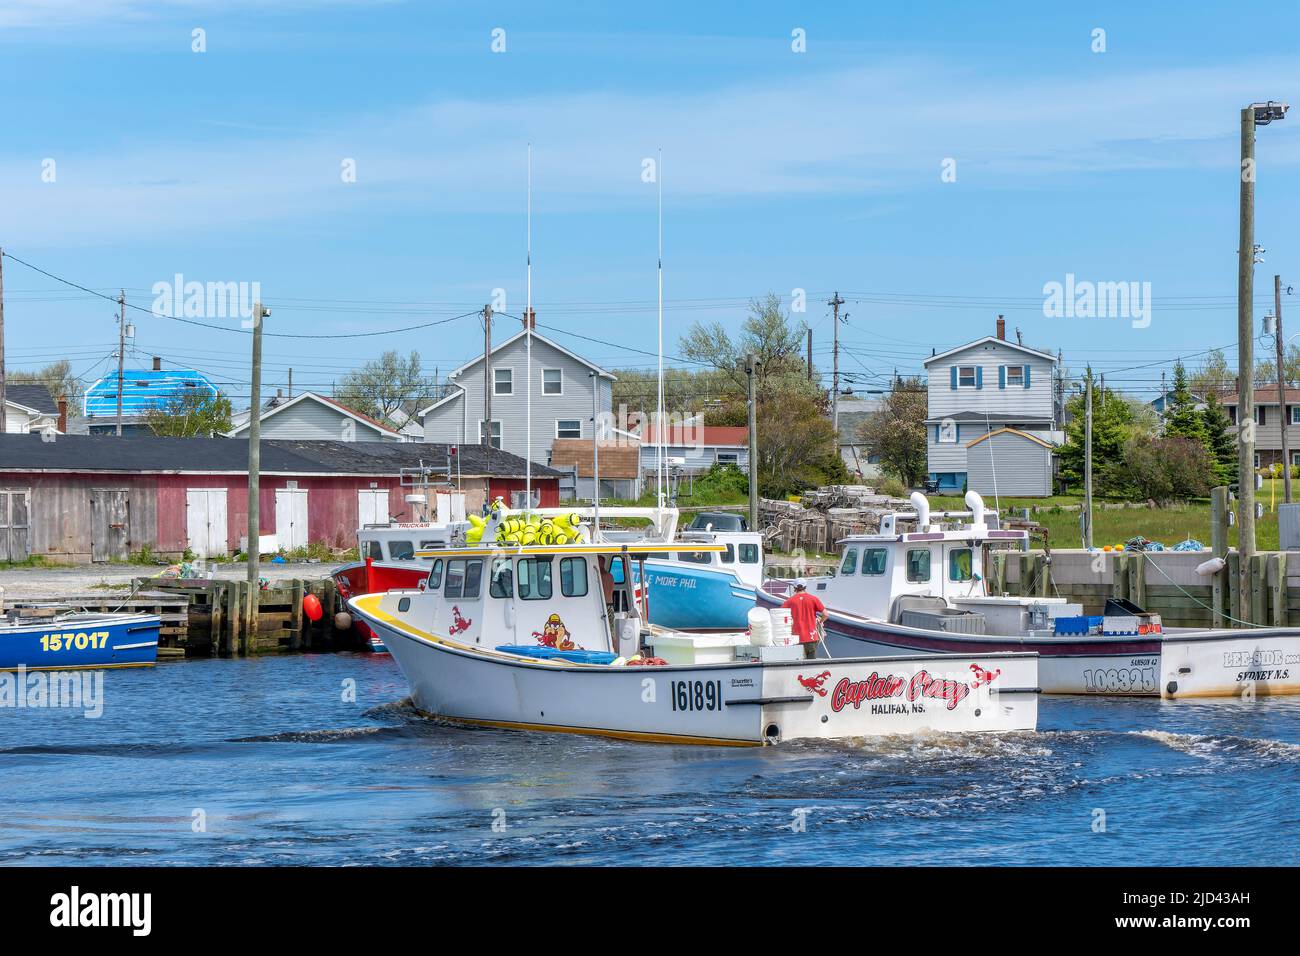 Le bateau de homard retourne au port de glace Bay, au Cap-Breton, en Nouvelle-Écosse. La pêche au homard est très importante pour l'économie de la région. Banque D'Images